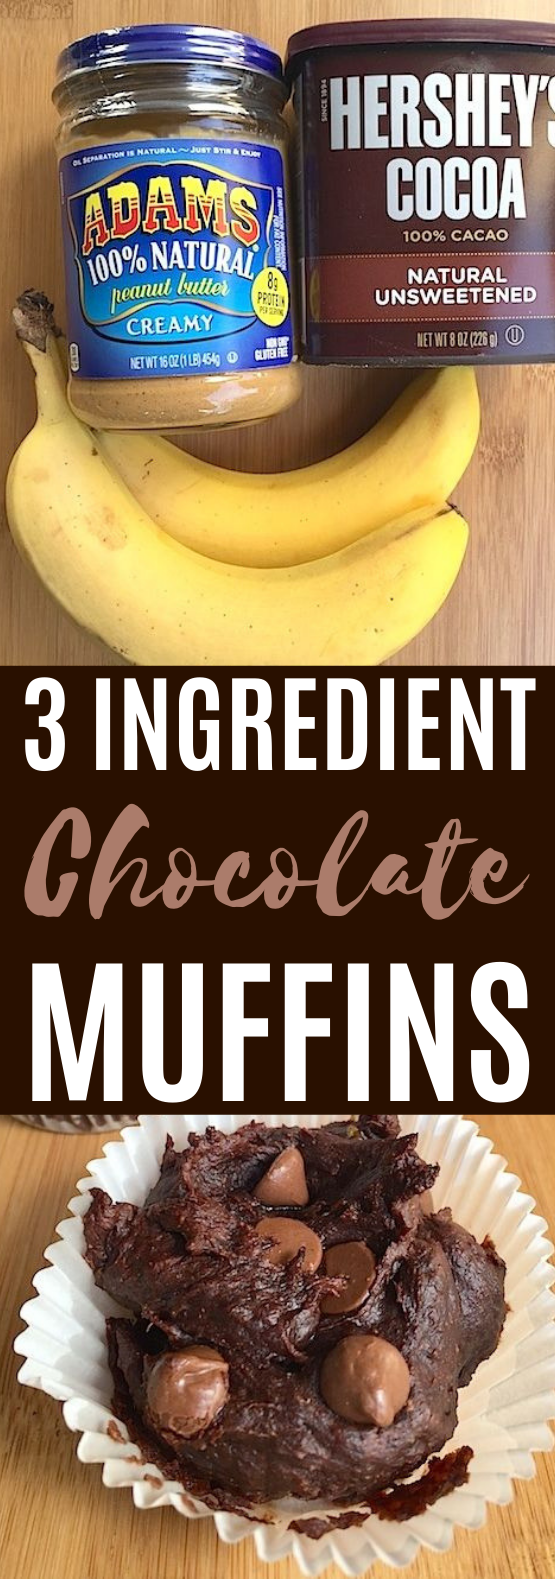 3 Ingredient Healthy Chocolate Muffins #chocolate #desserts #baking #muffins #breakfast